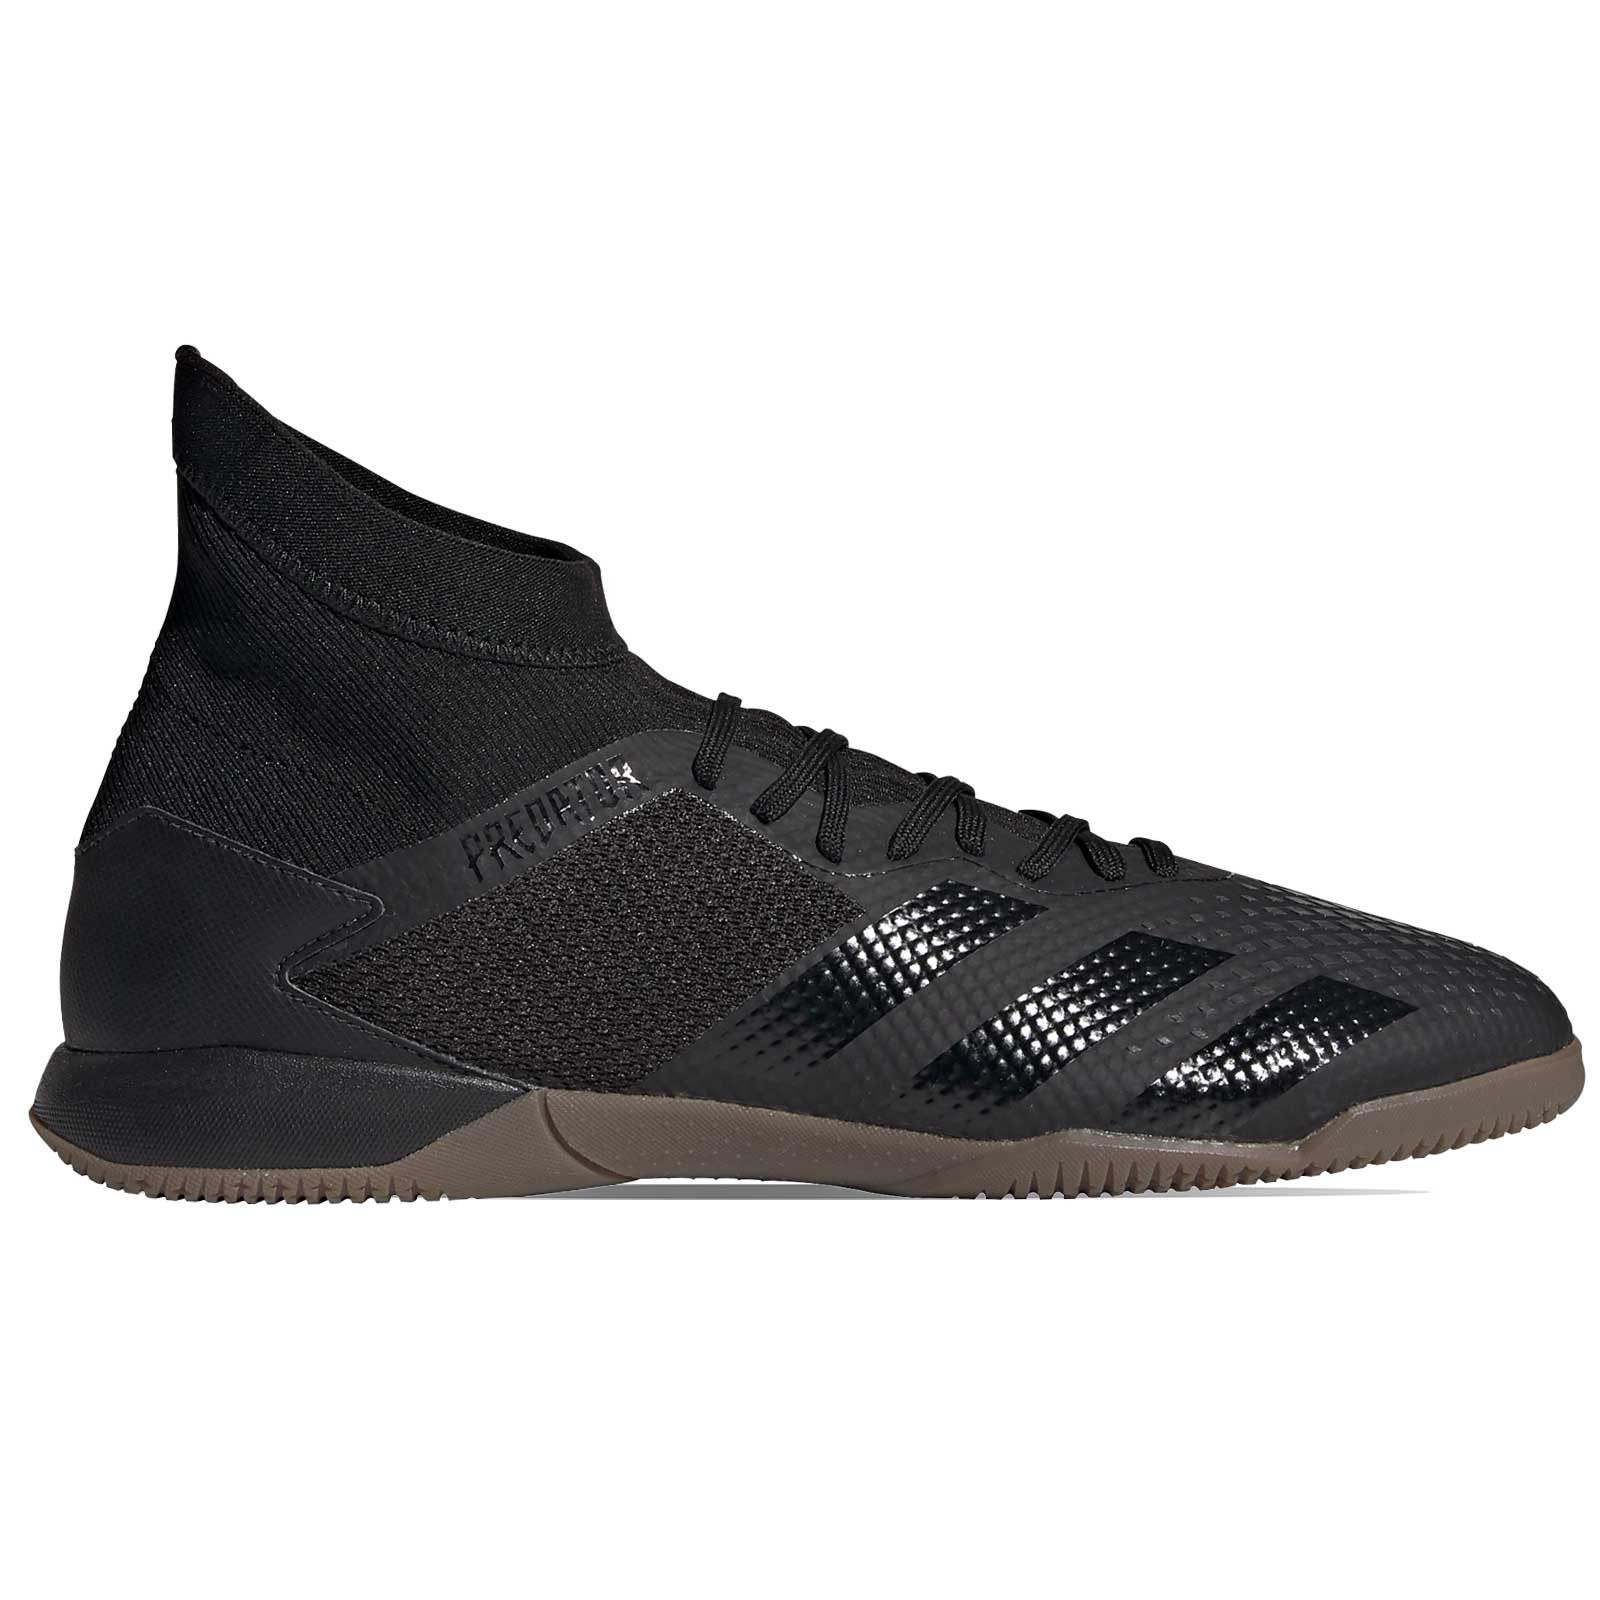 Zapatillas adidas Predator 20.3 IN negras | futbolmania